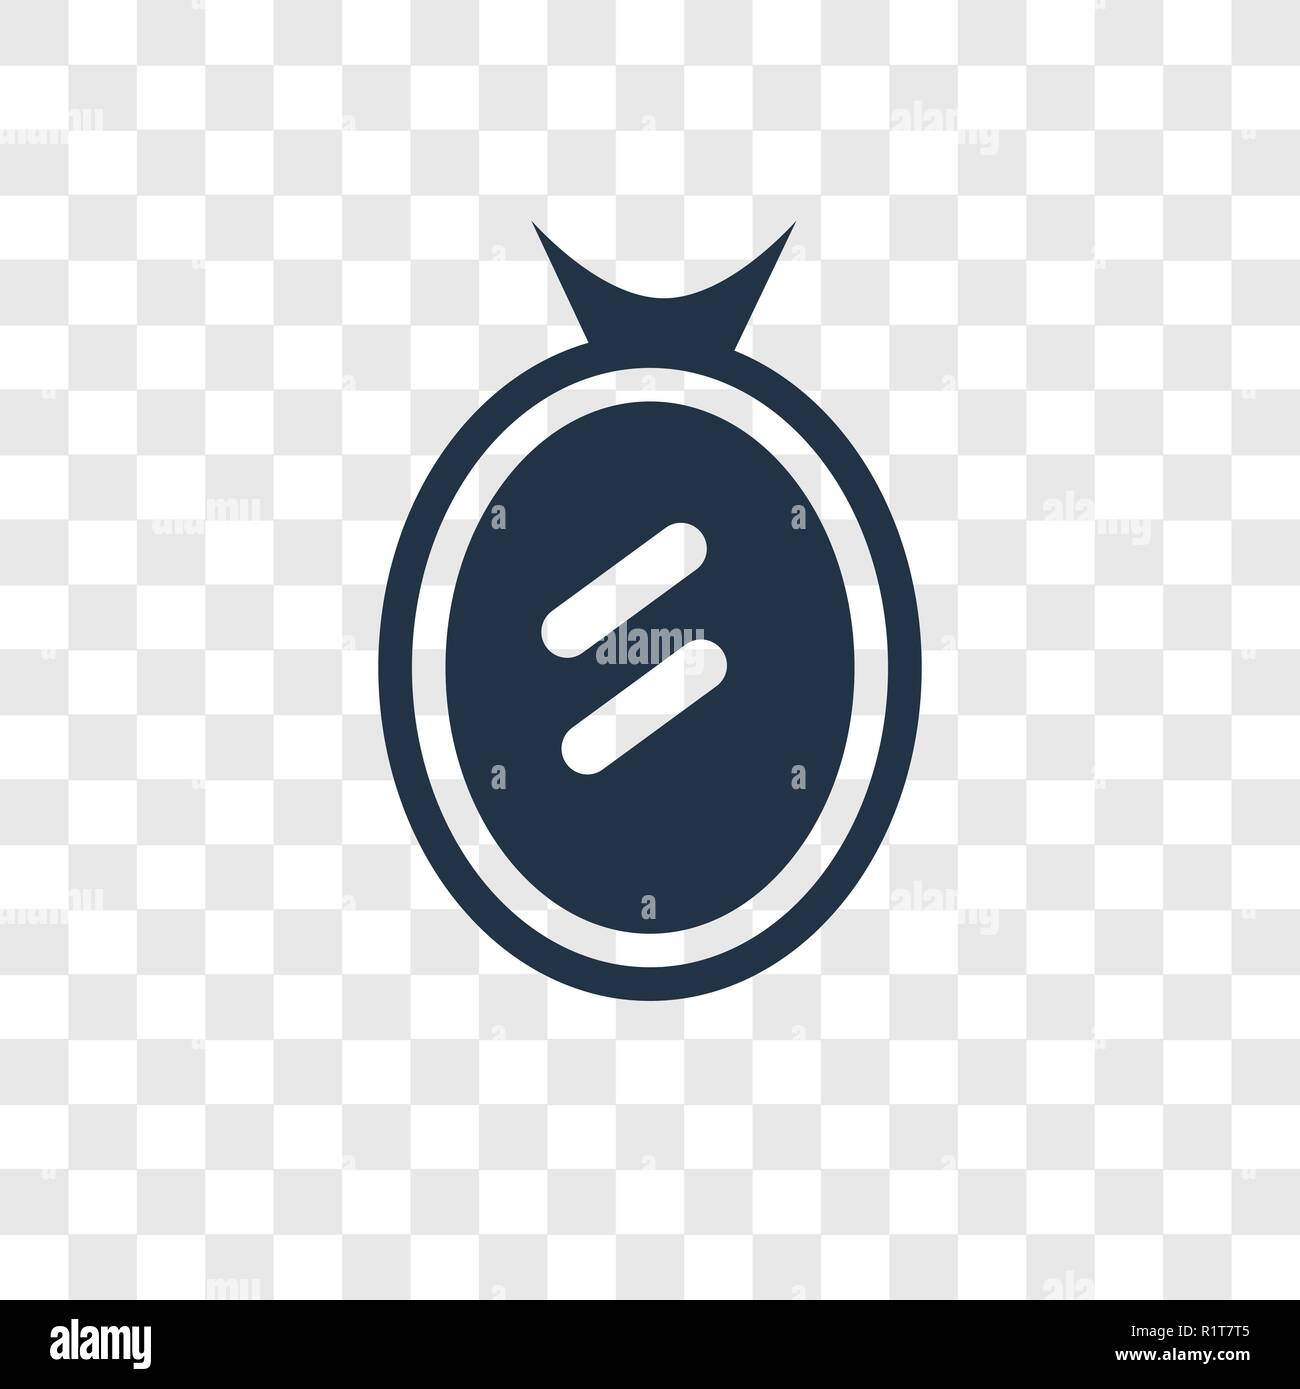 Spiegel vektor Icon auf transparentem Hintergrund isoliert, Spiegel Transparenz logo Konzept Stock Vektor